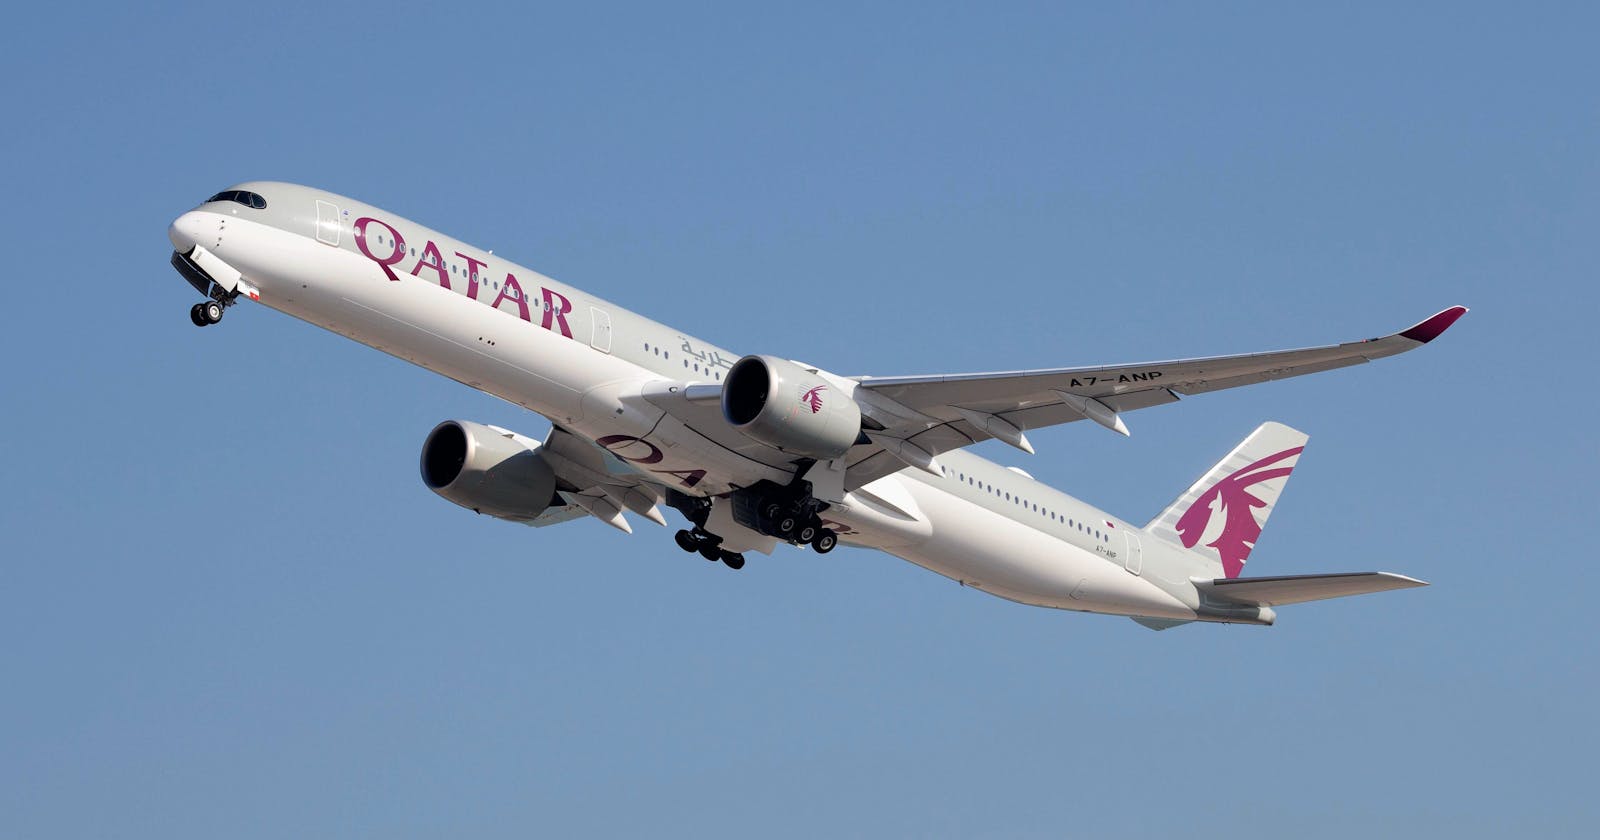 Qatar Airways flights from New York to heathrow